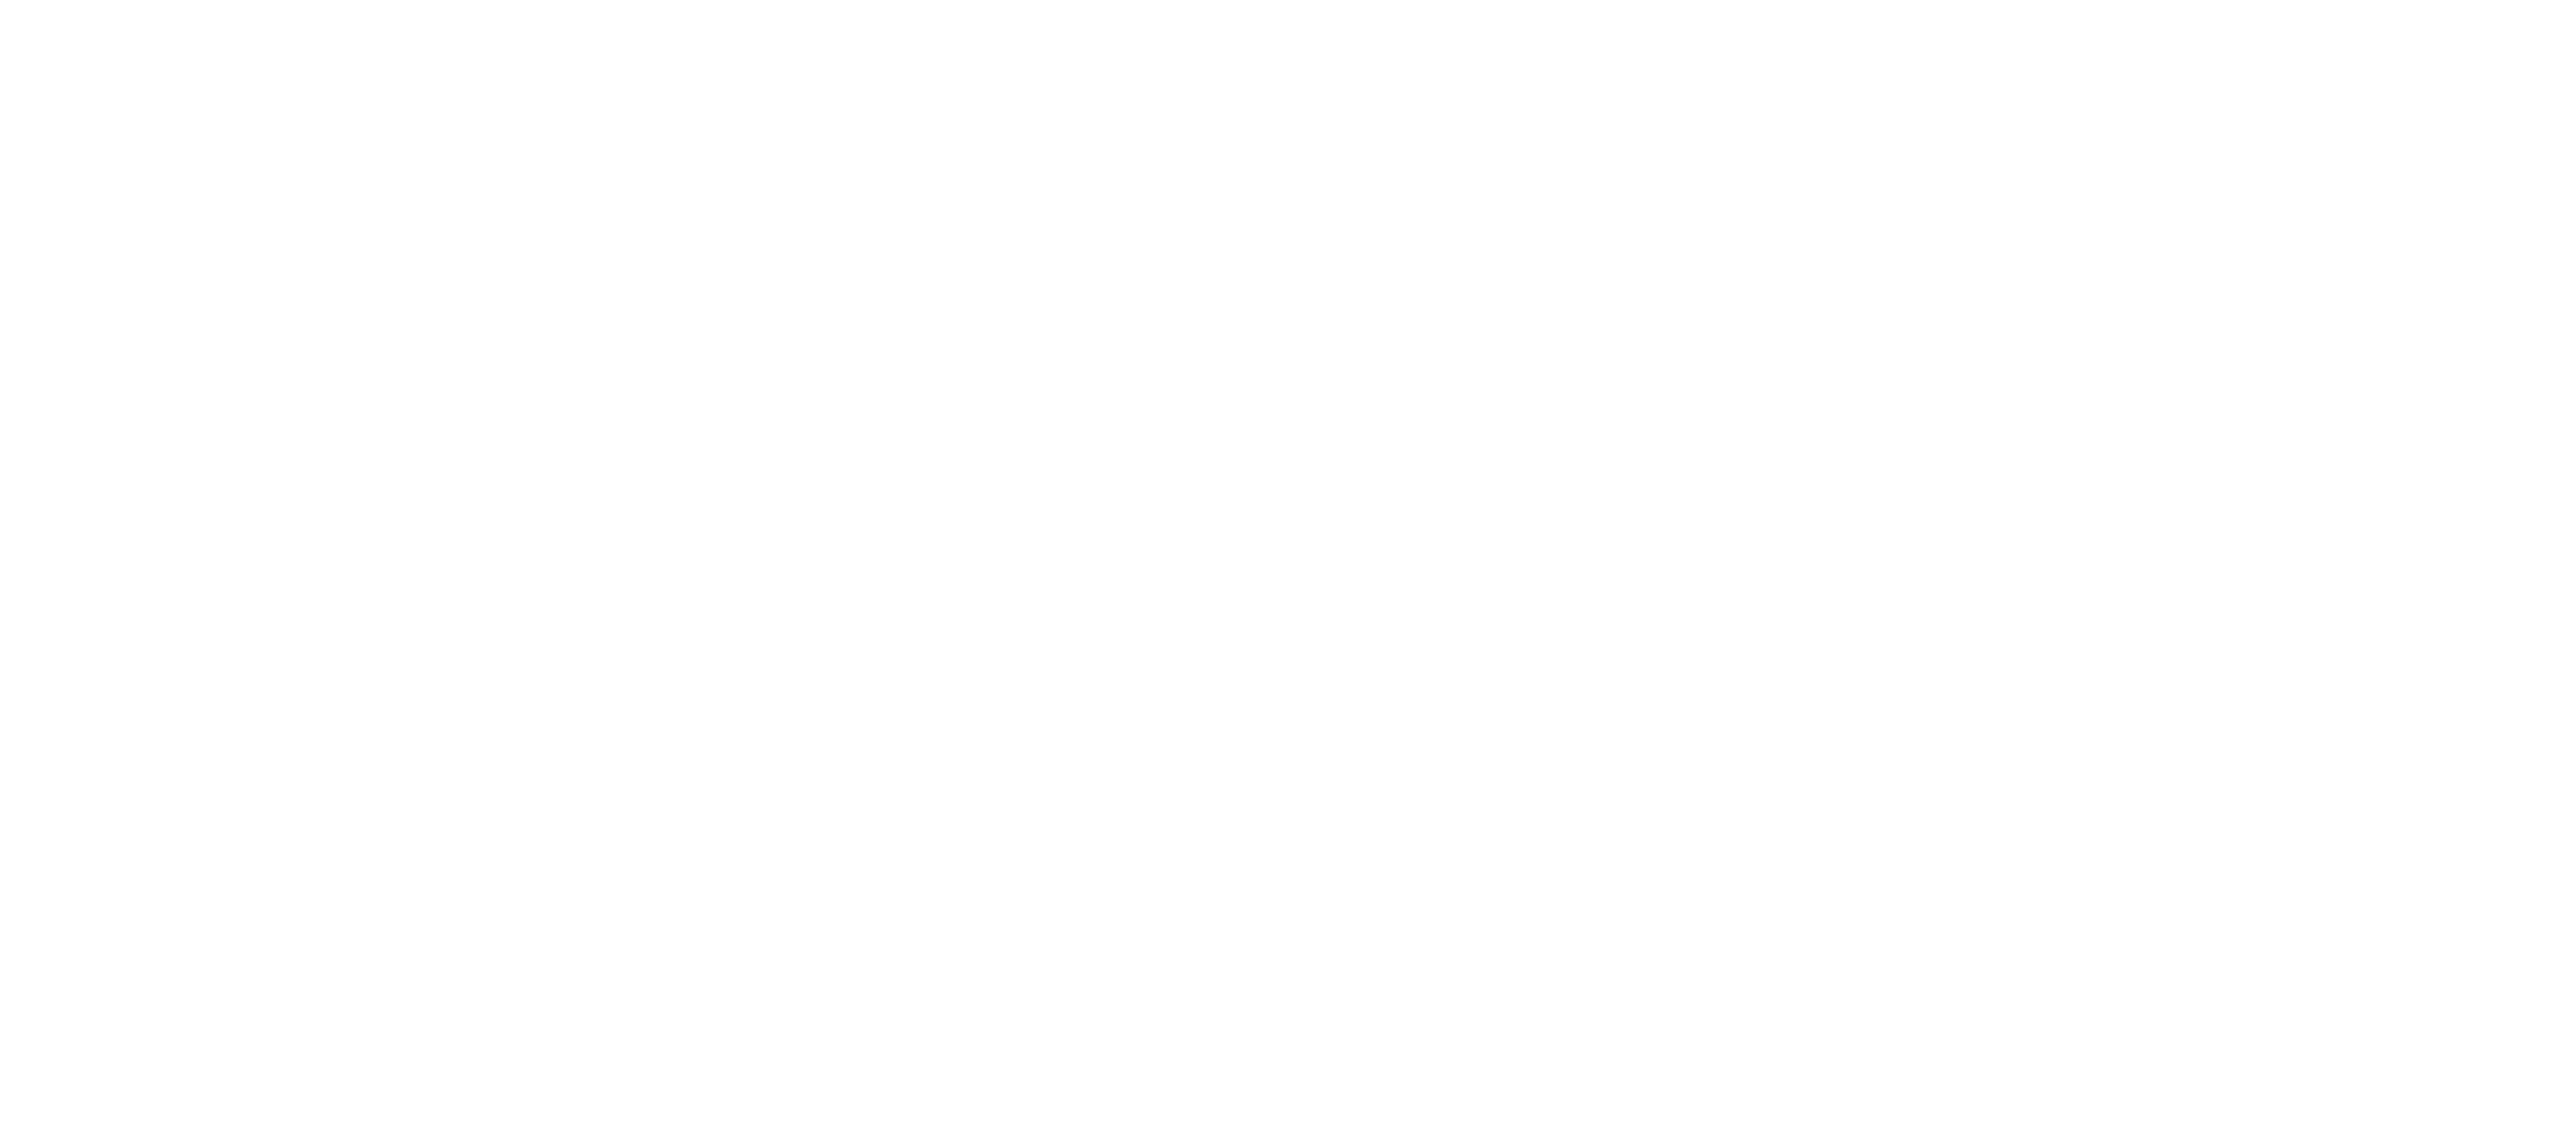 Destro logo